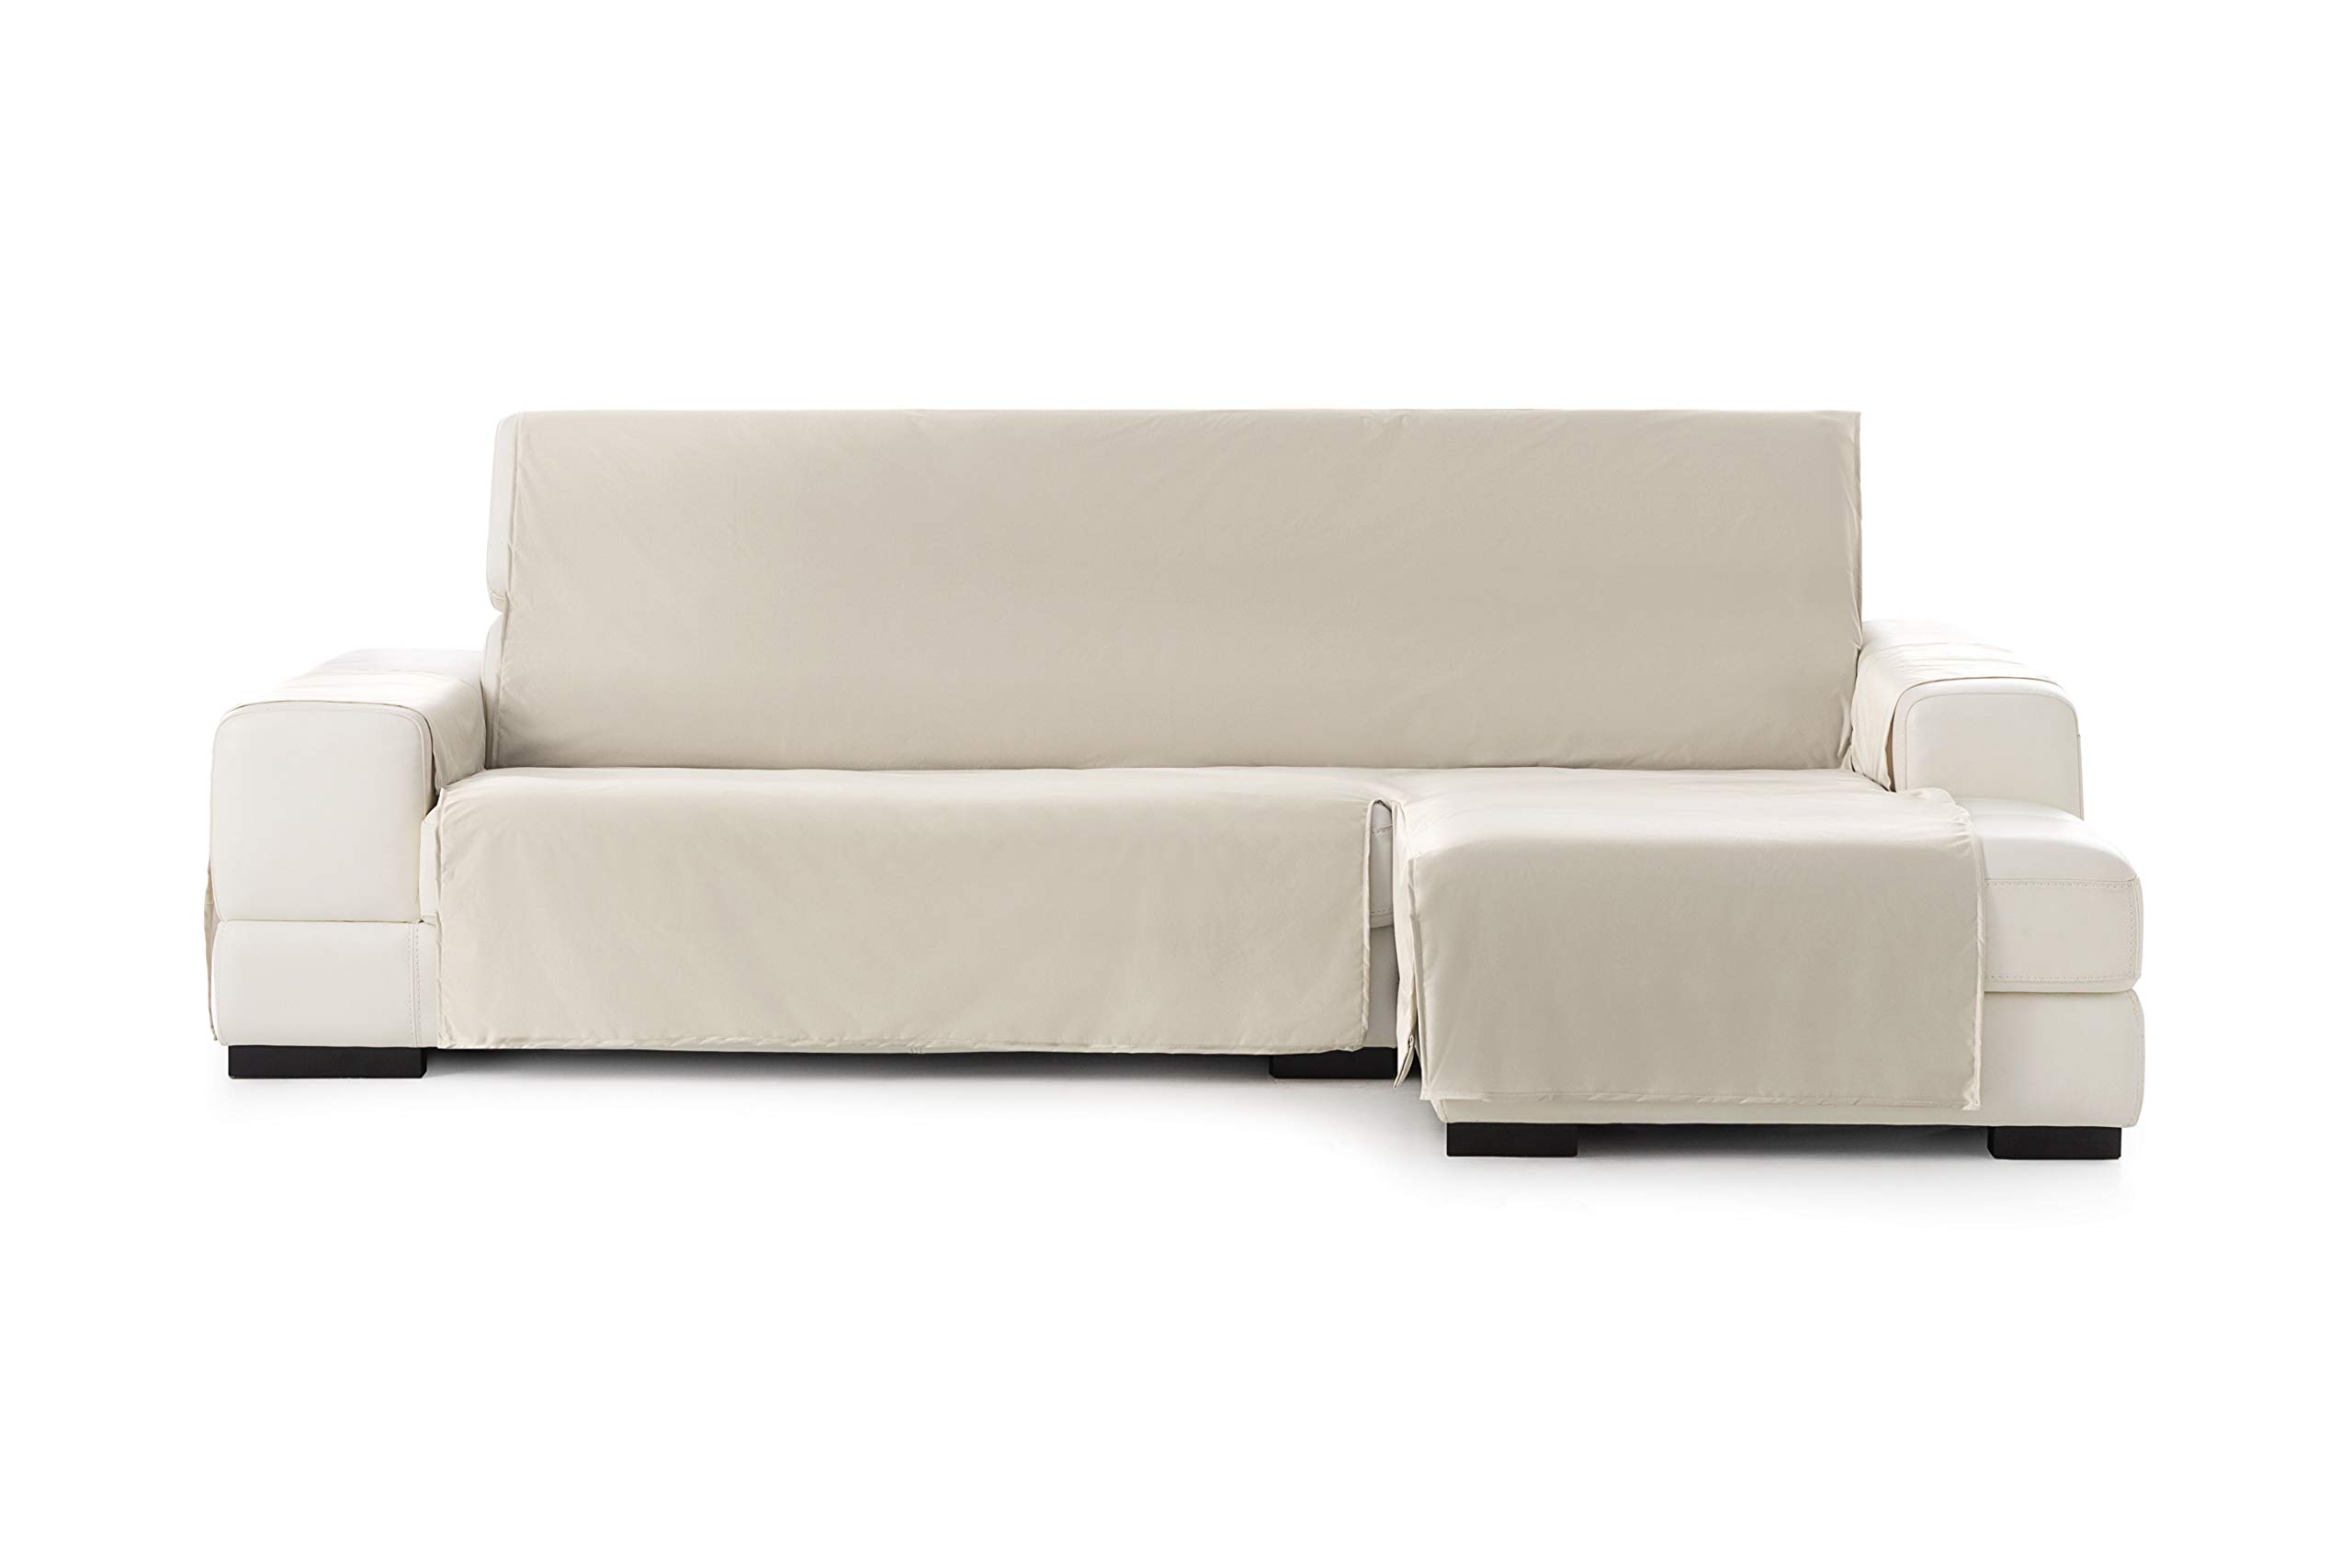 Eysa Somme Protect wasserdichte und atmungsaktive Sofa überwurf, 100% Polyester, Ecru, 240 cm